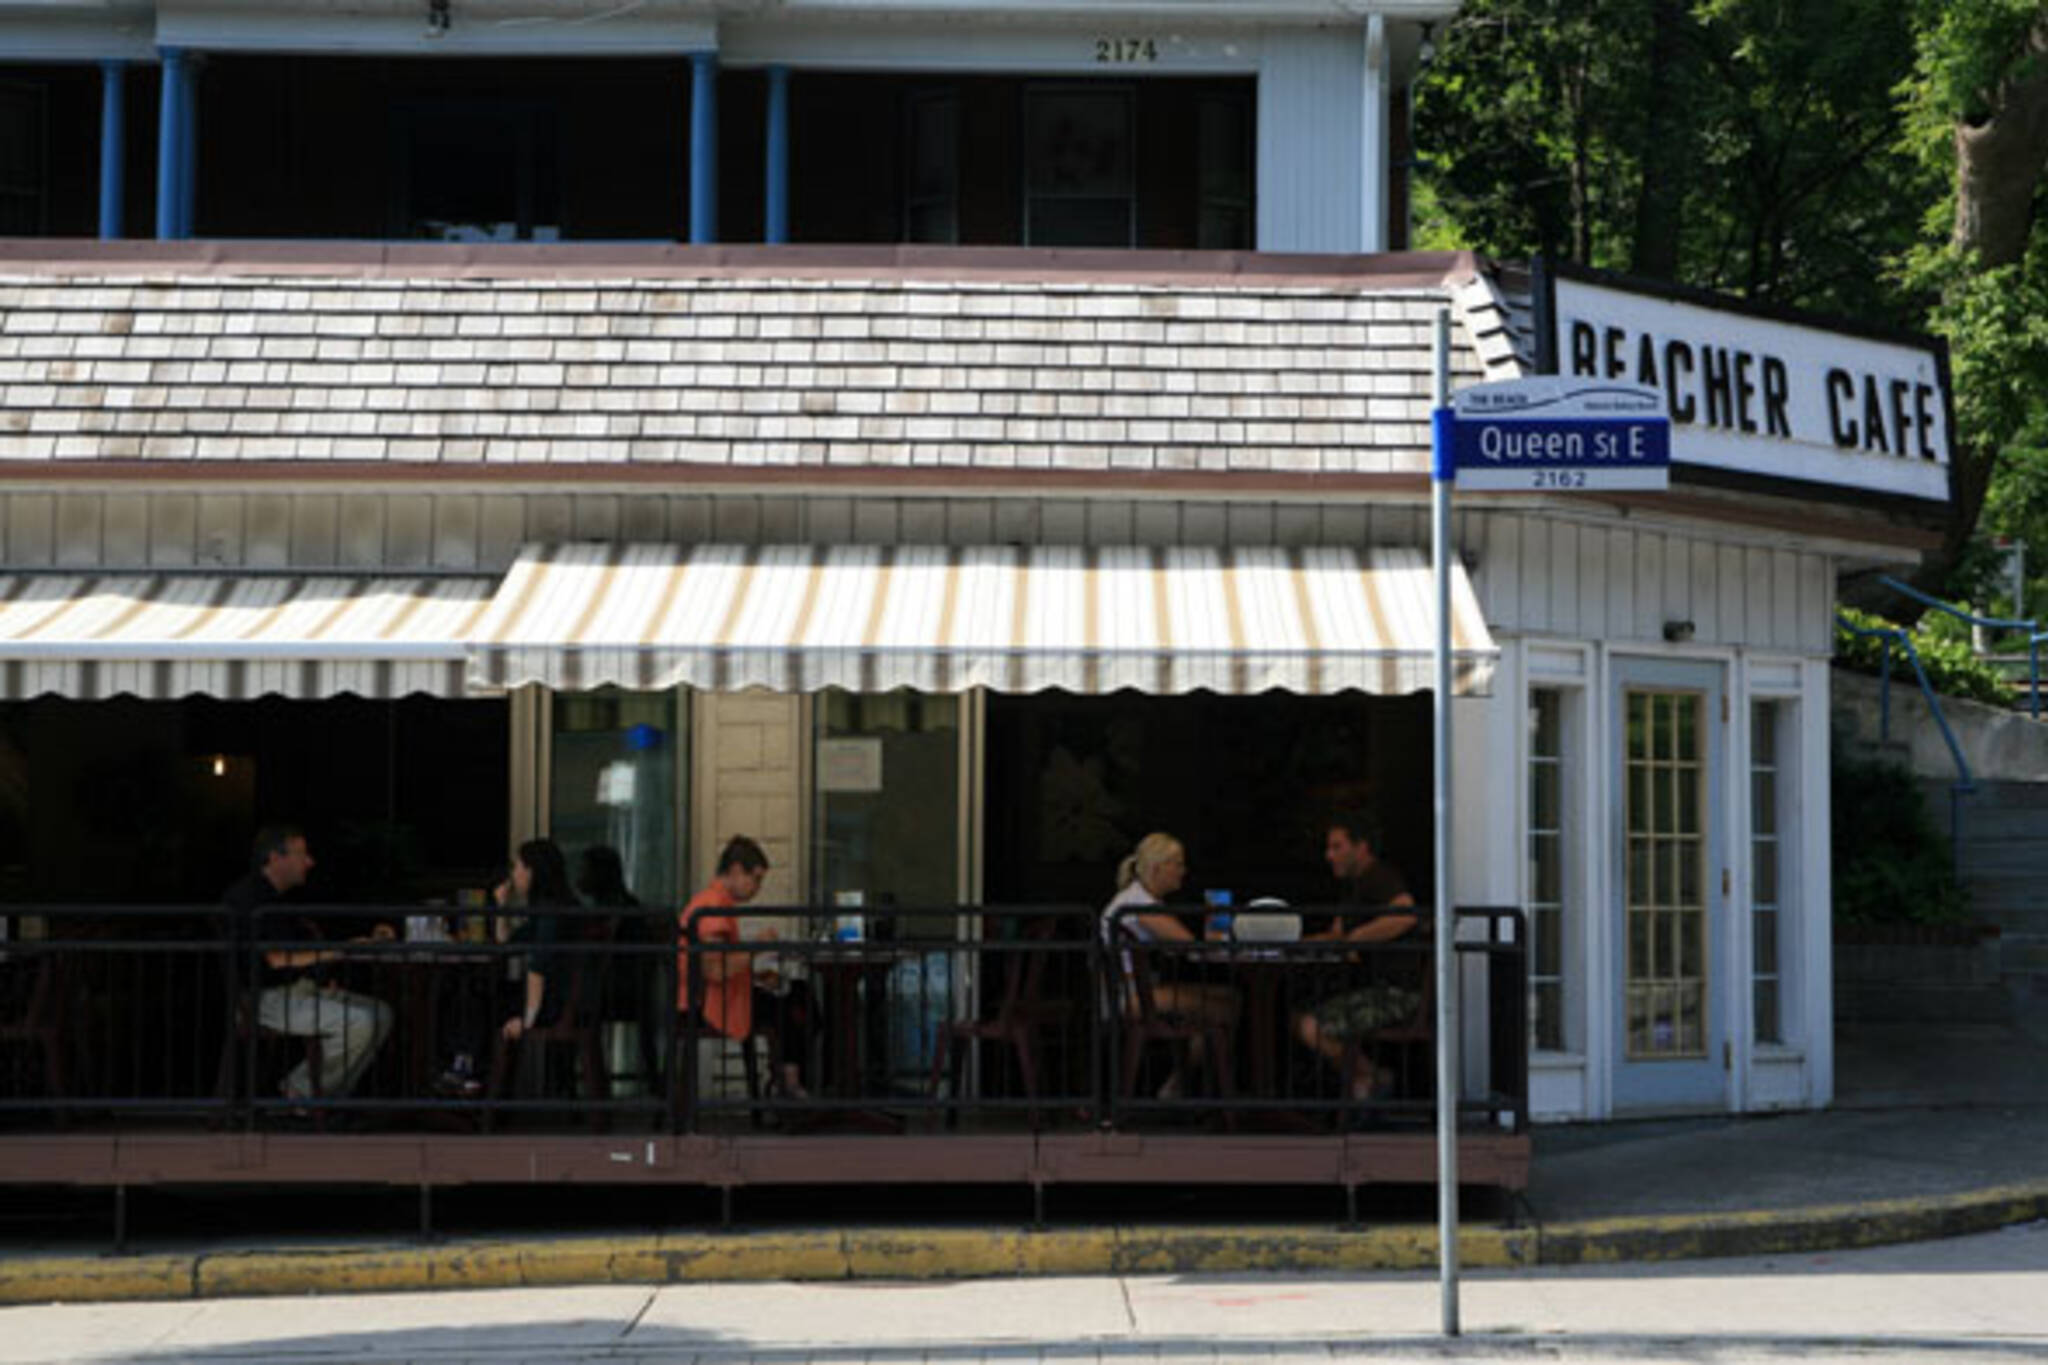 Beacher Cafe Toronto